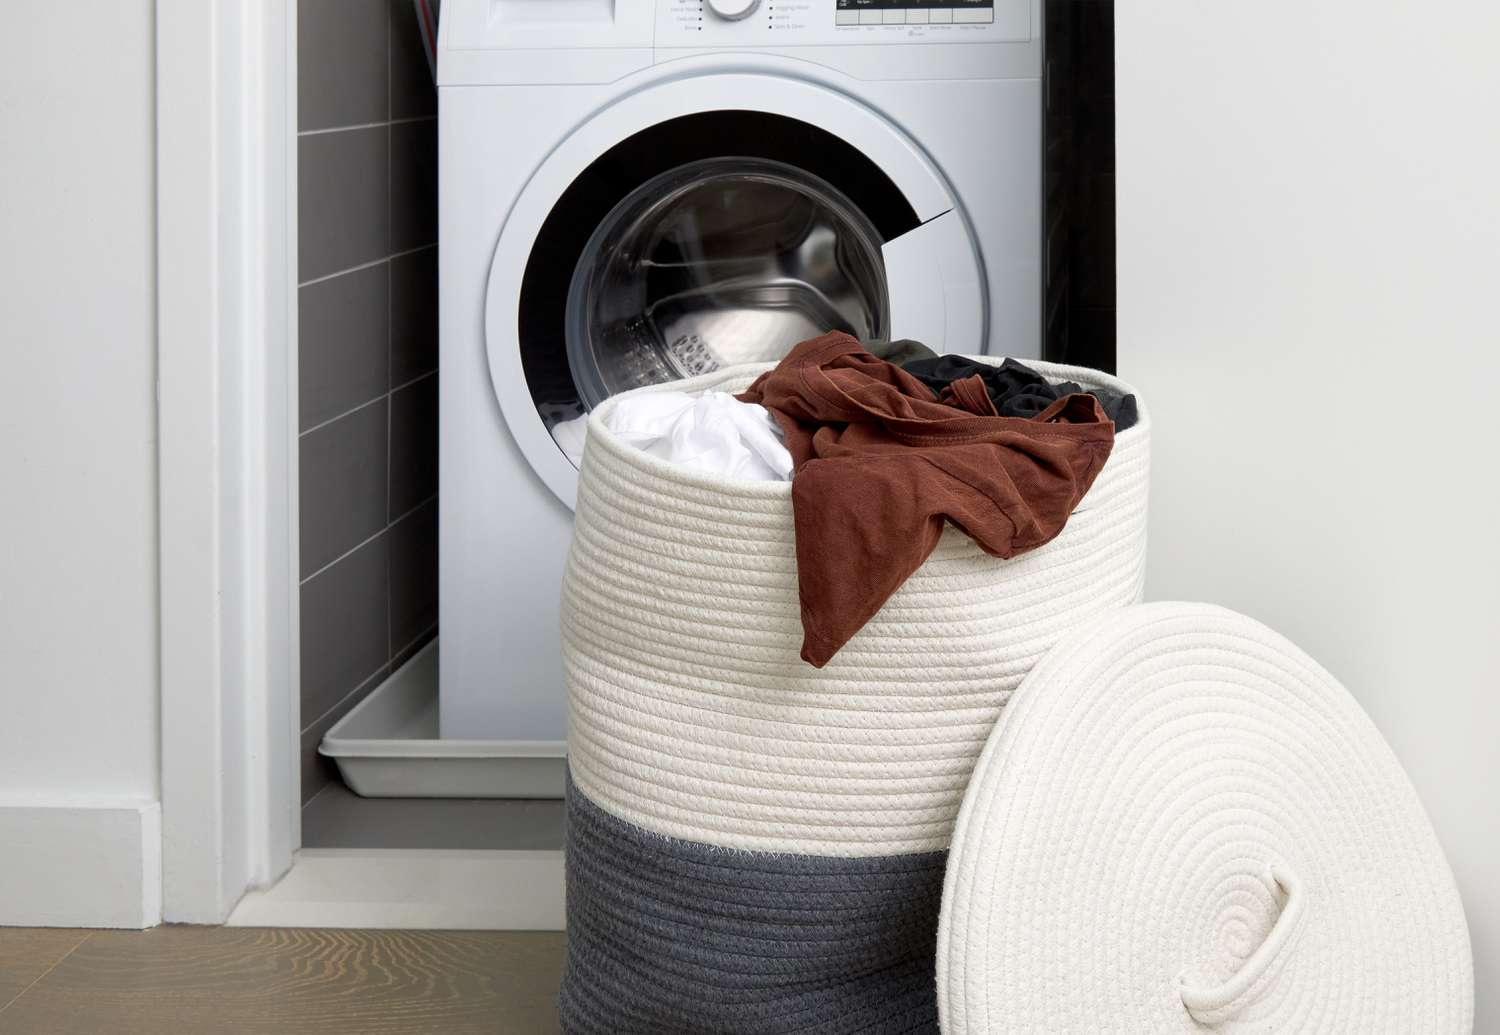 cesto de roupa suja em frente a uma lavadora